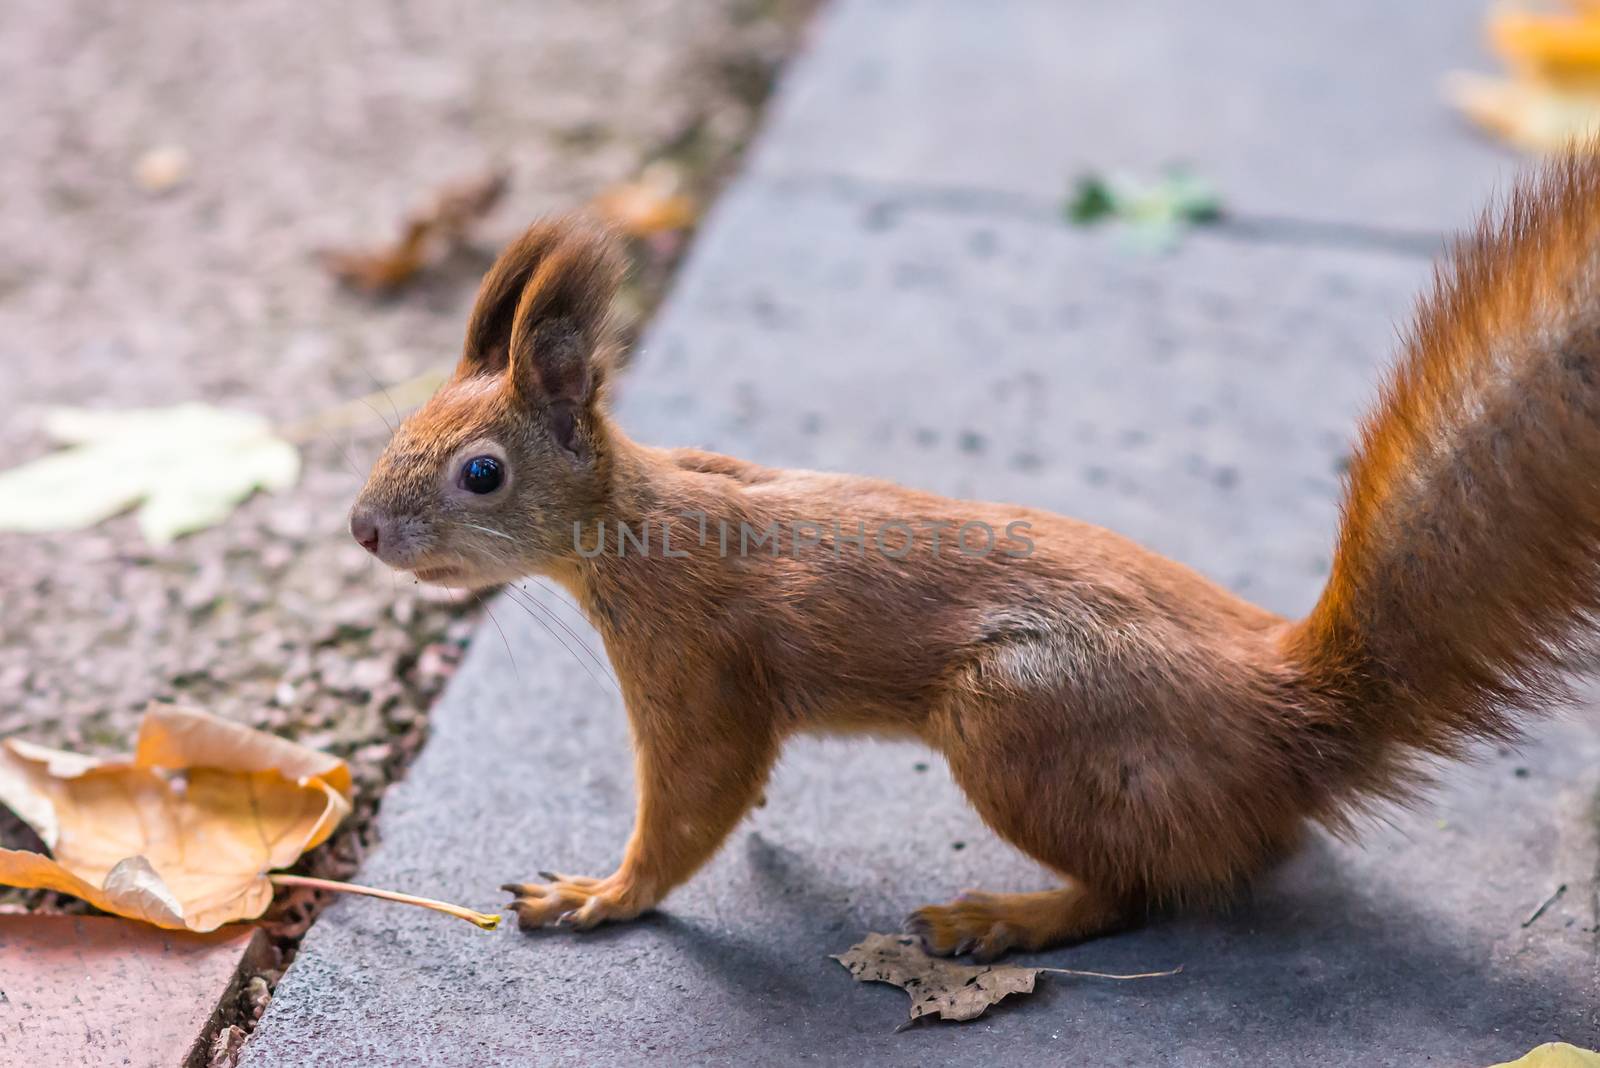 Squirrel in autumn Park by okskukuruza